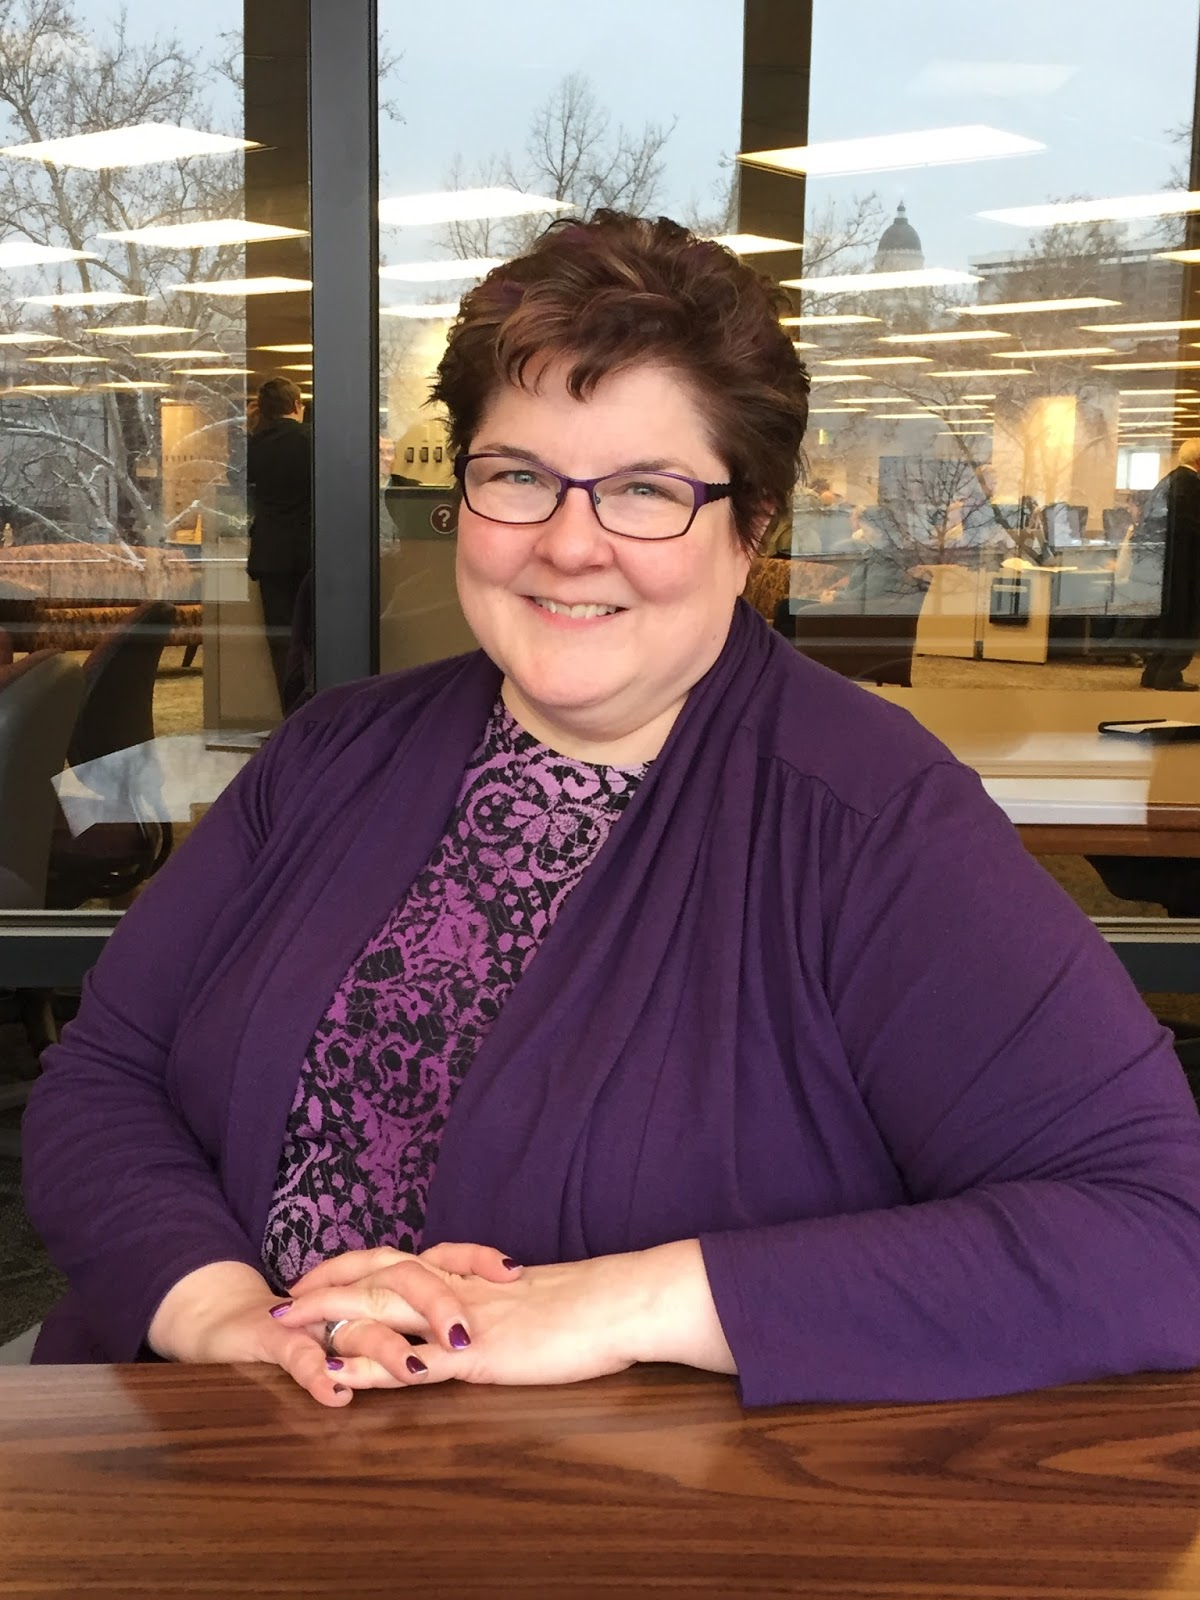 Cyndi Ingle, professional genealogist